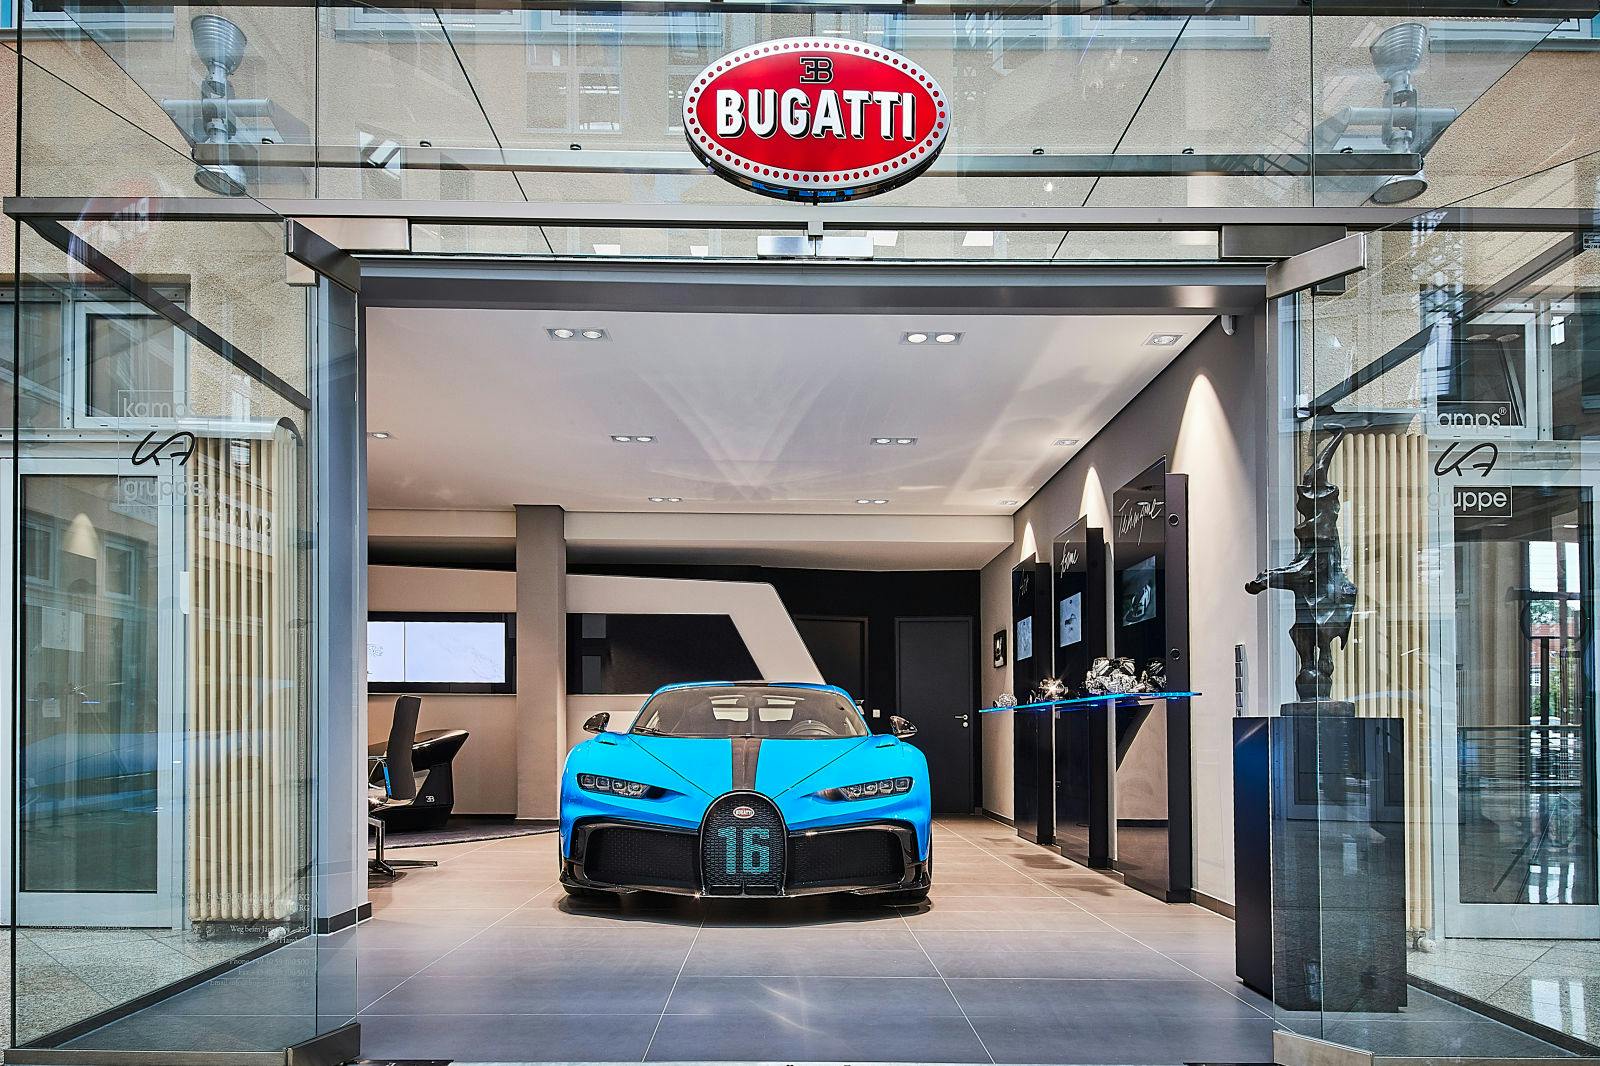 The Bugatti Chiron Pur Sport in the Bugatti Hamburg Showroom.